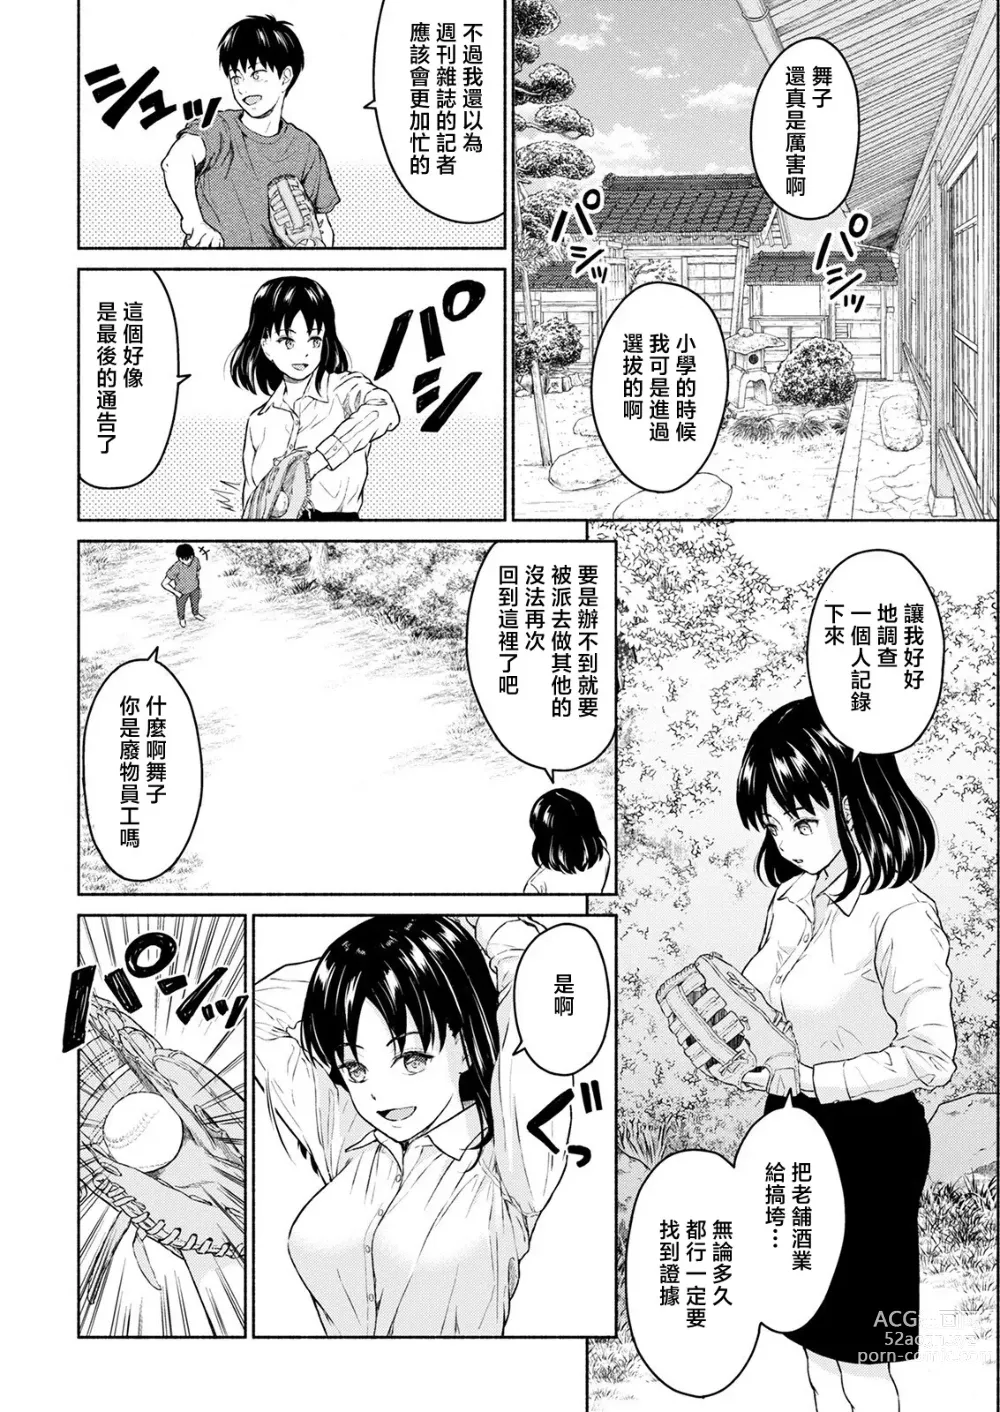 Page 12 of manga Marude Rokugatsu no Kohan o Fuku Kaze no you ni Zenpen